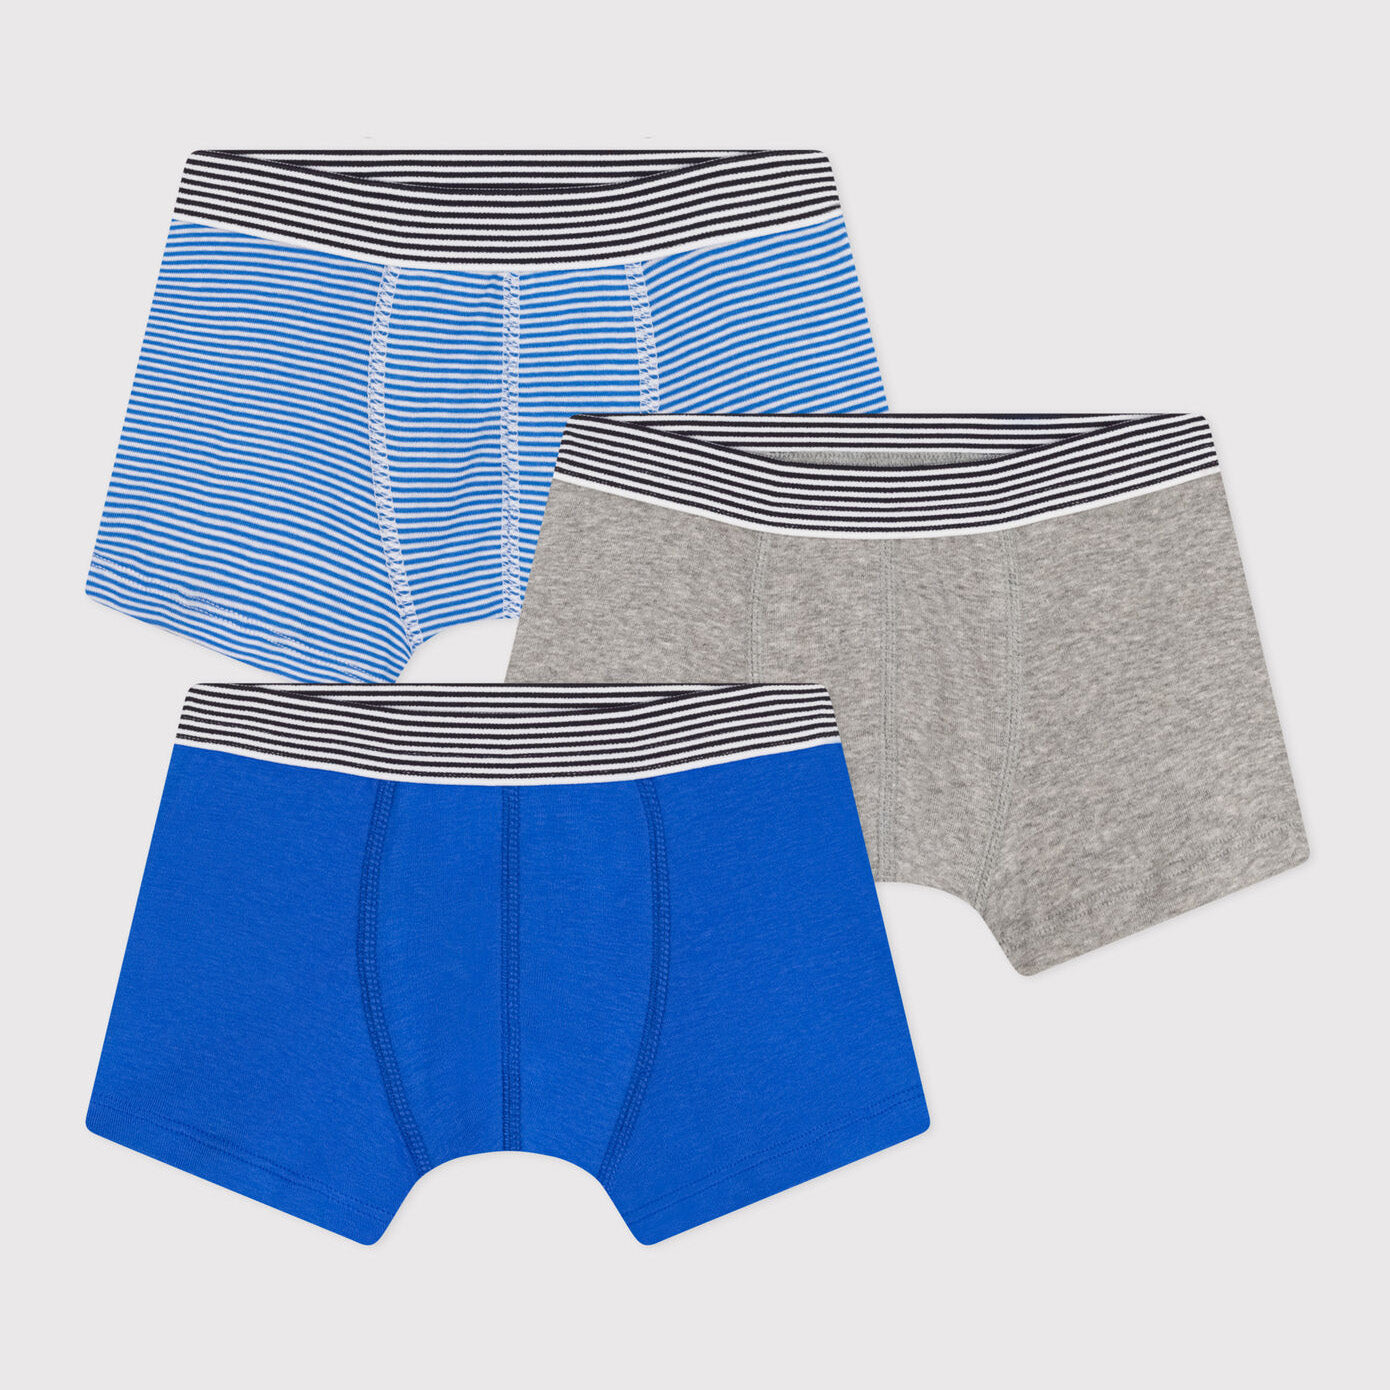 Boys Tricolor Cotton Underwear Set(3 Pack)